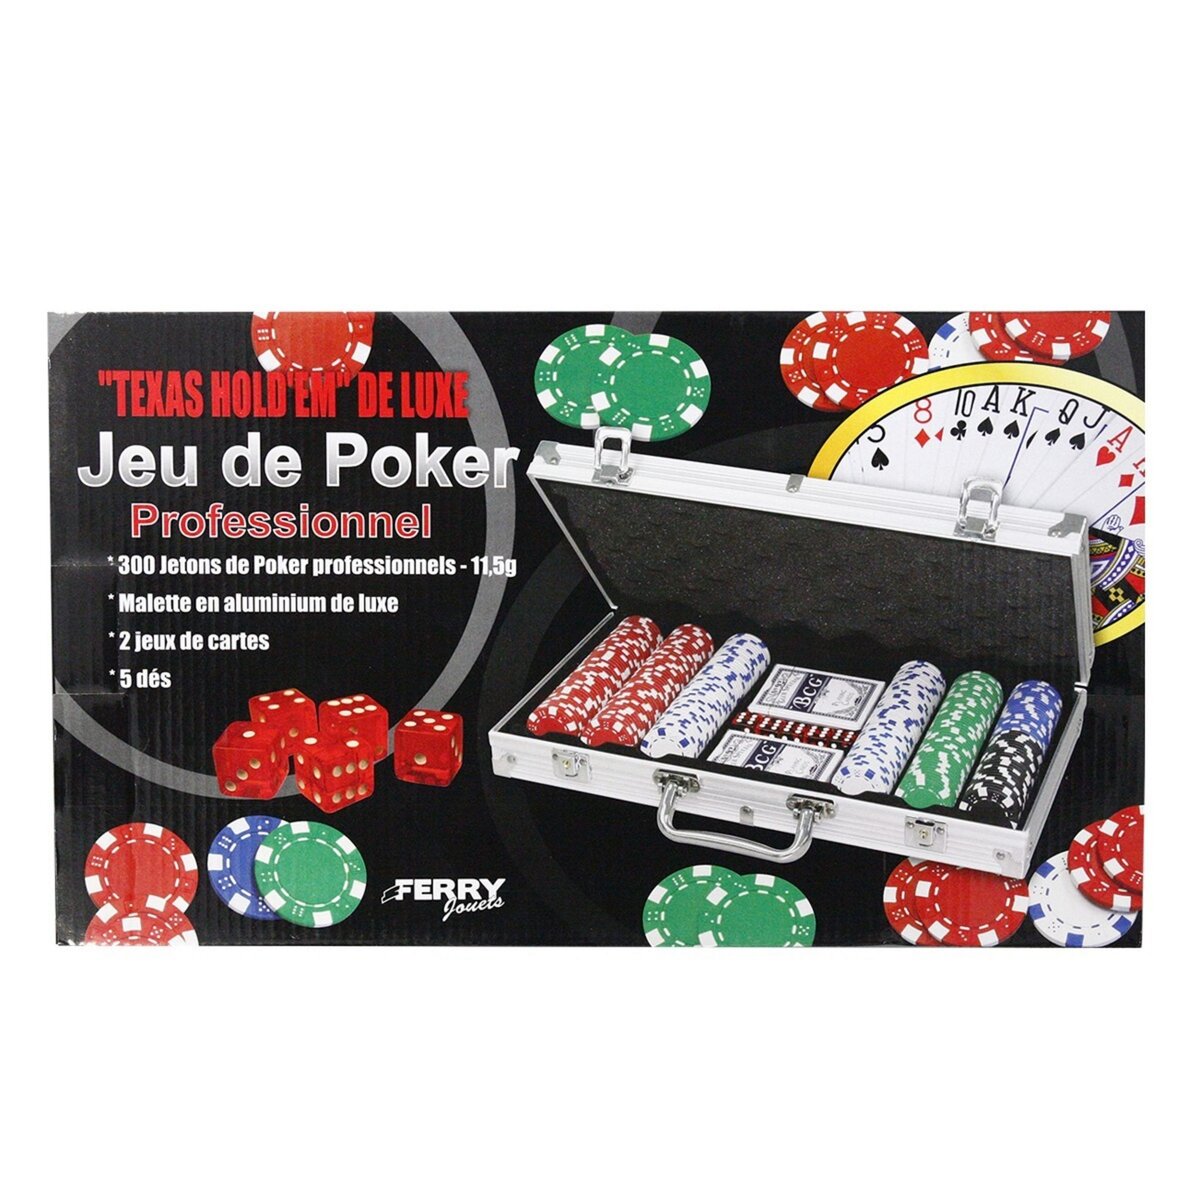 Ferry Jacques & Cie Valisette métal poker